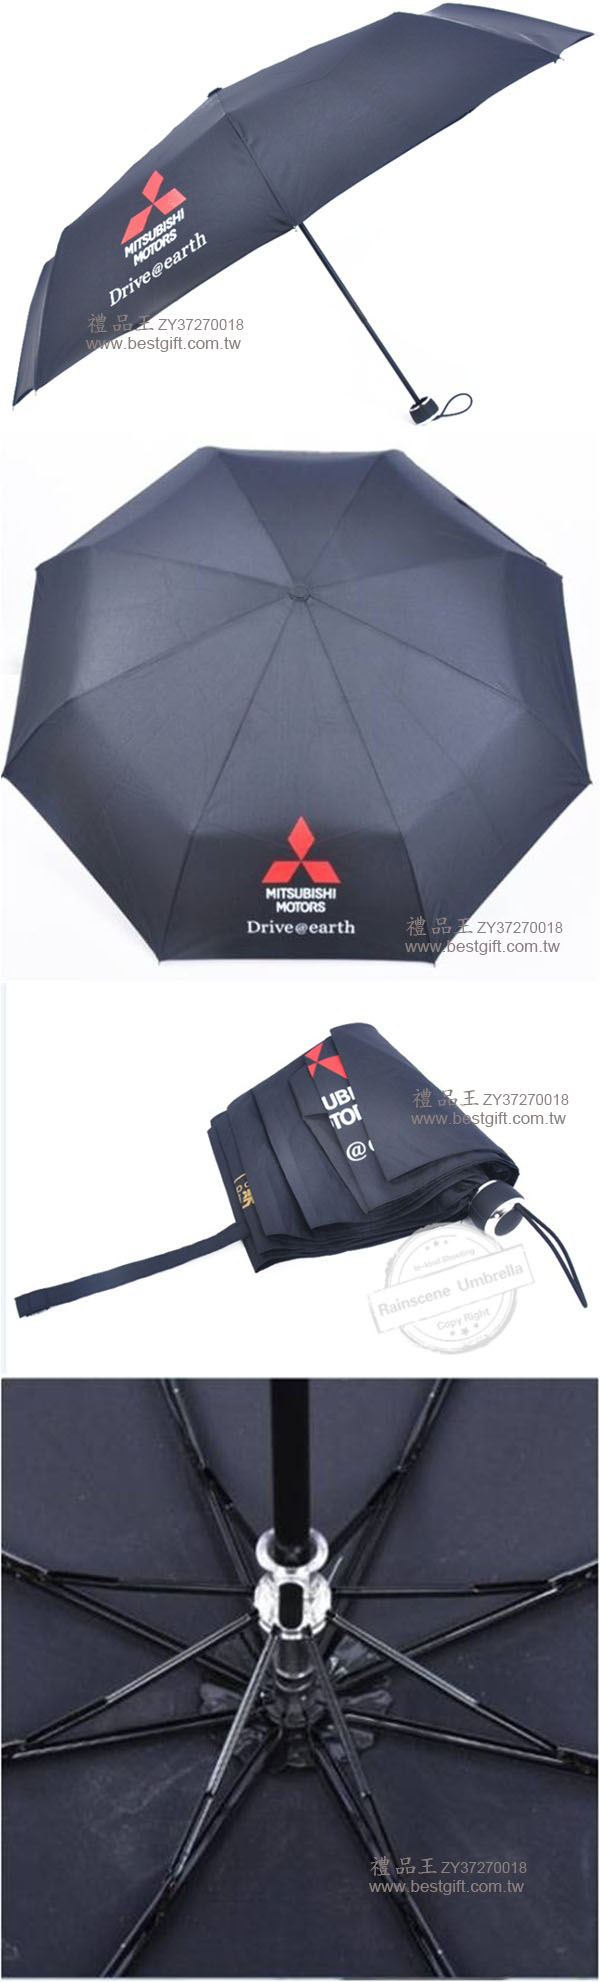 超輕防曬折疊傘     商品貨號: ZY37270018   